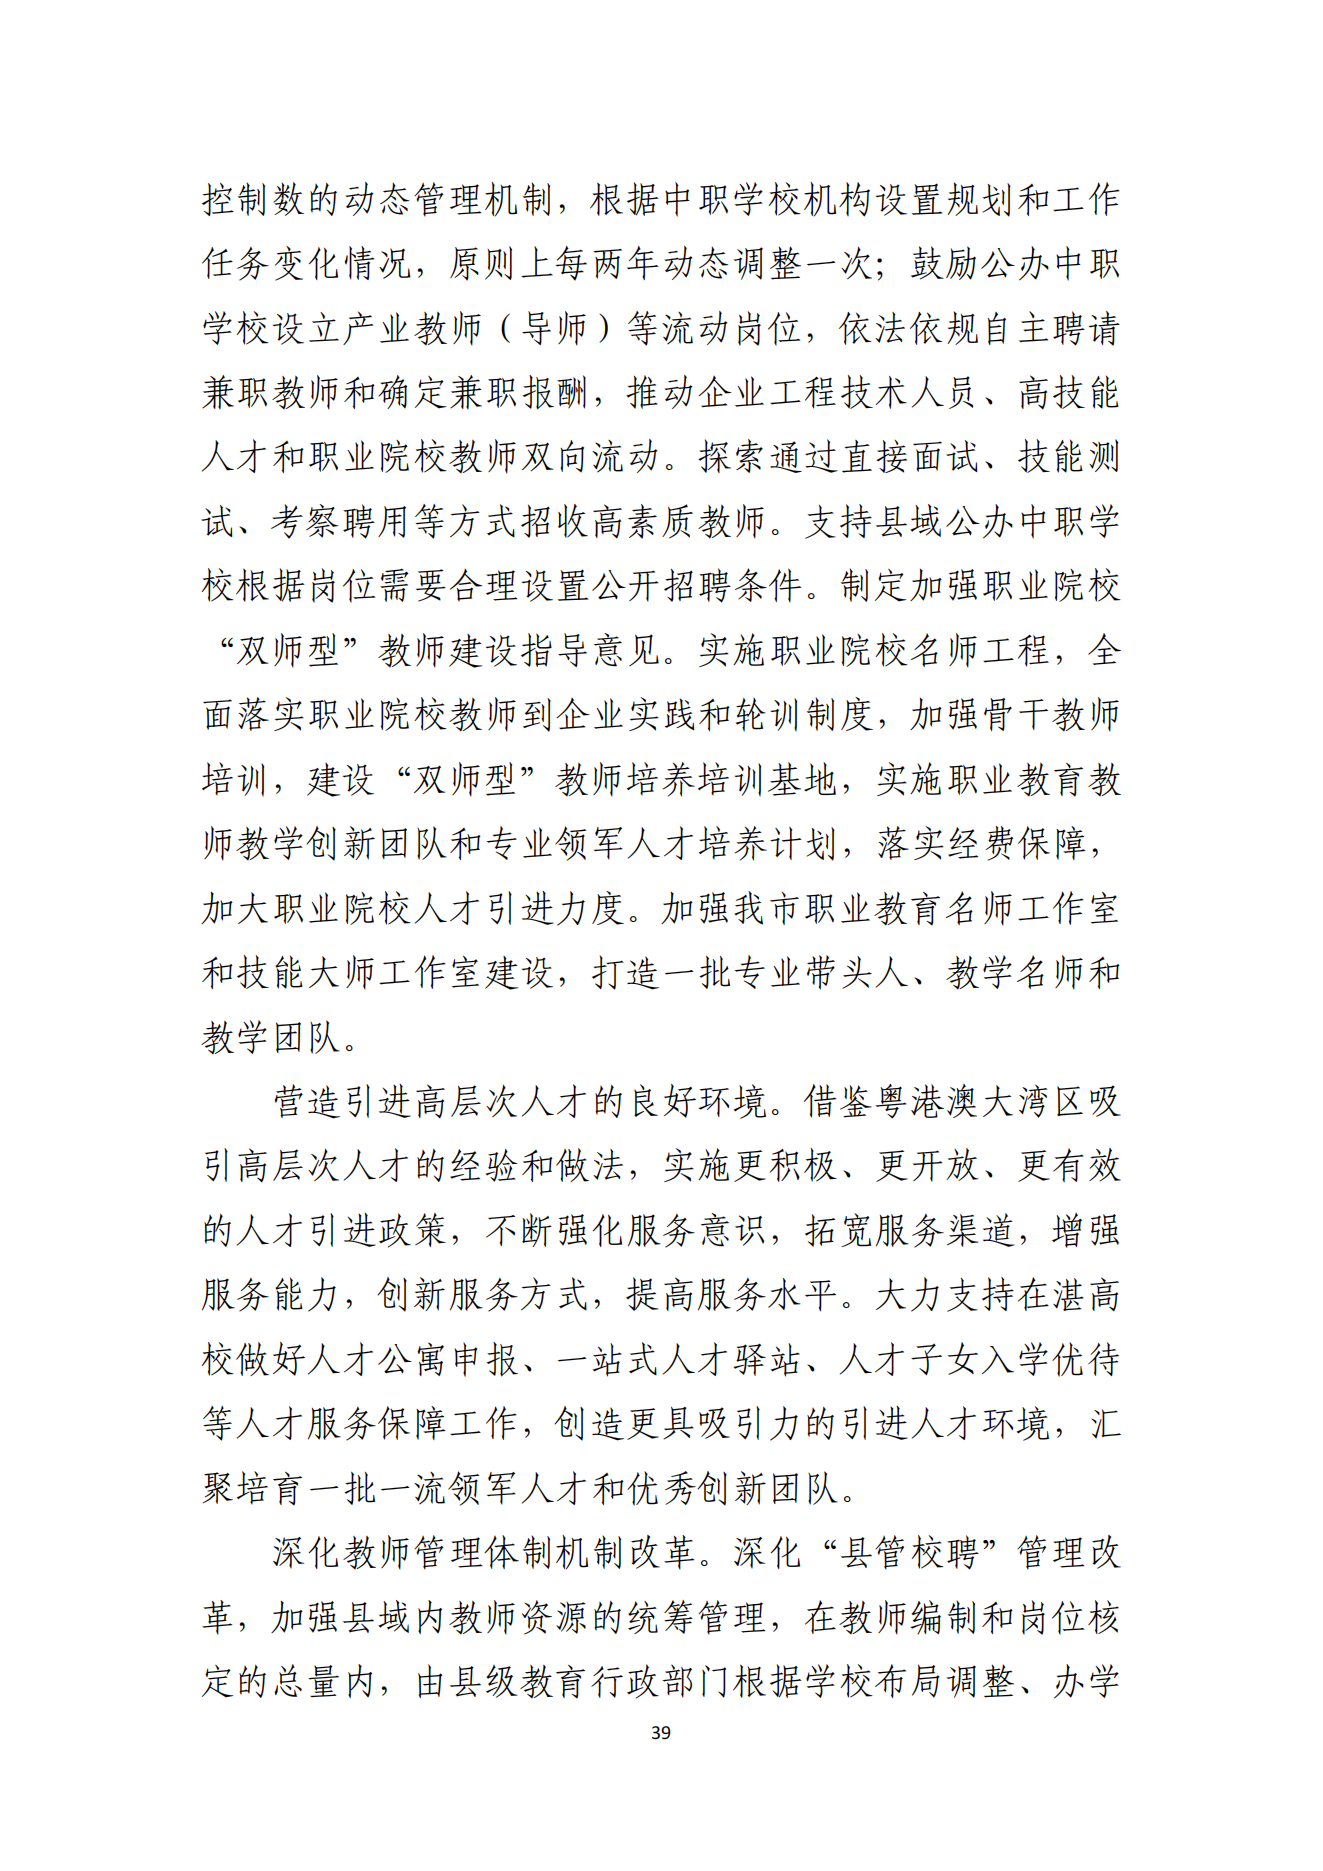 湛江市人民政府办公室关于印发湛江市教育发展“十四五”规划的通知_38.png